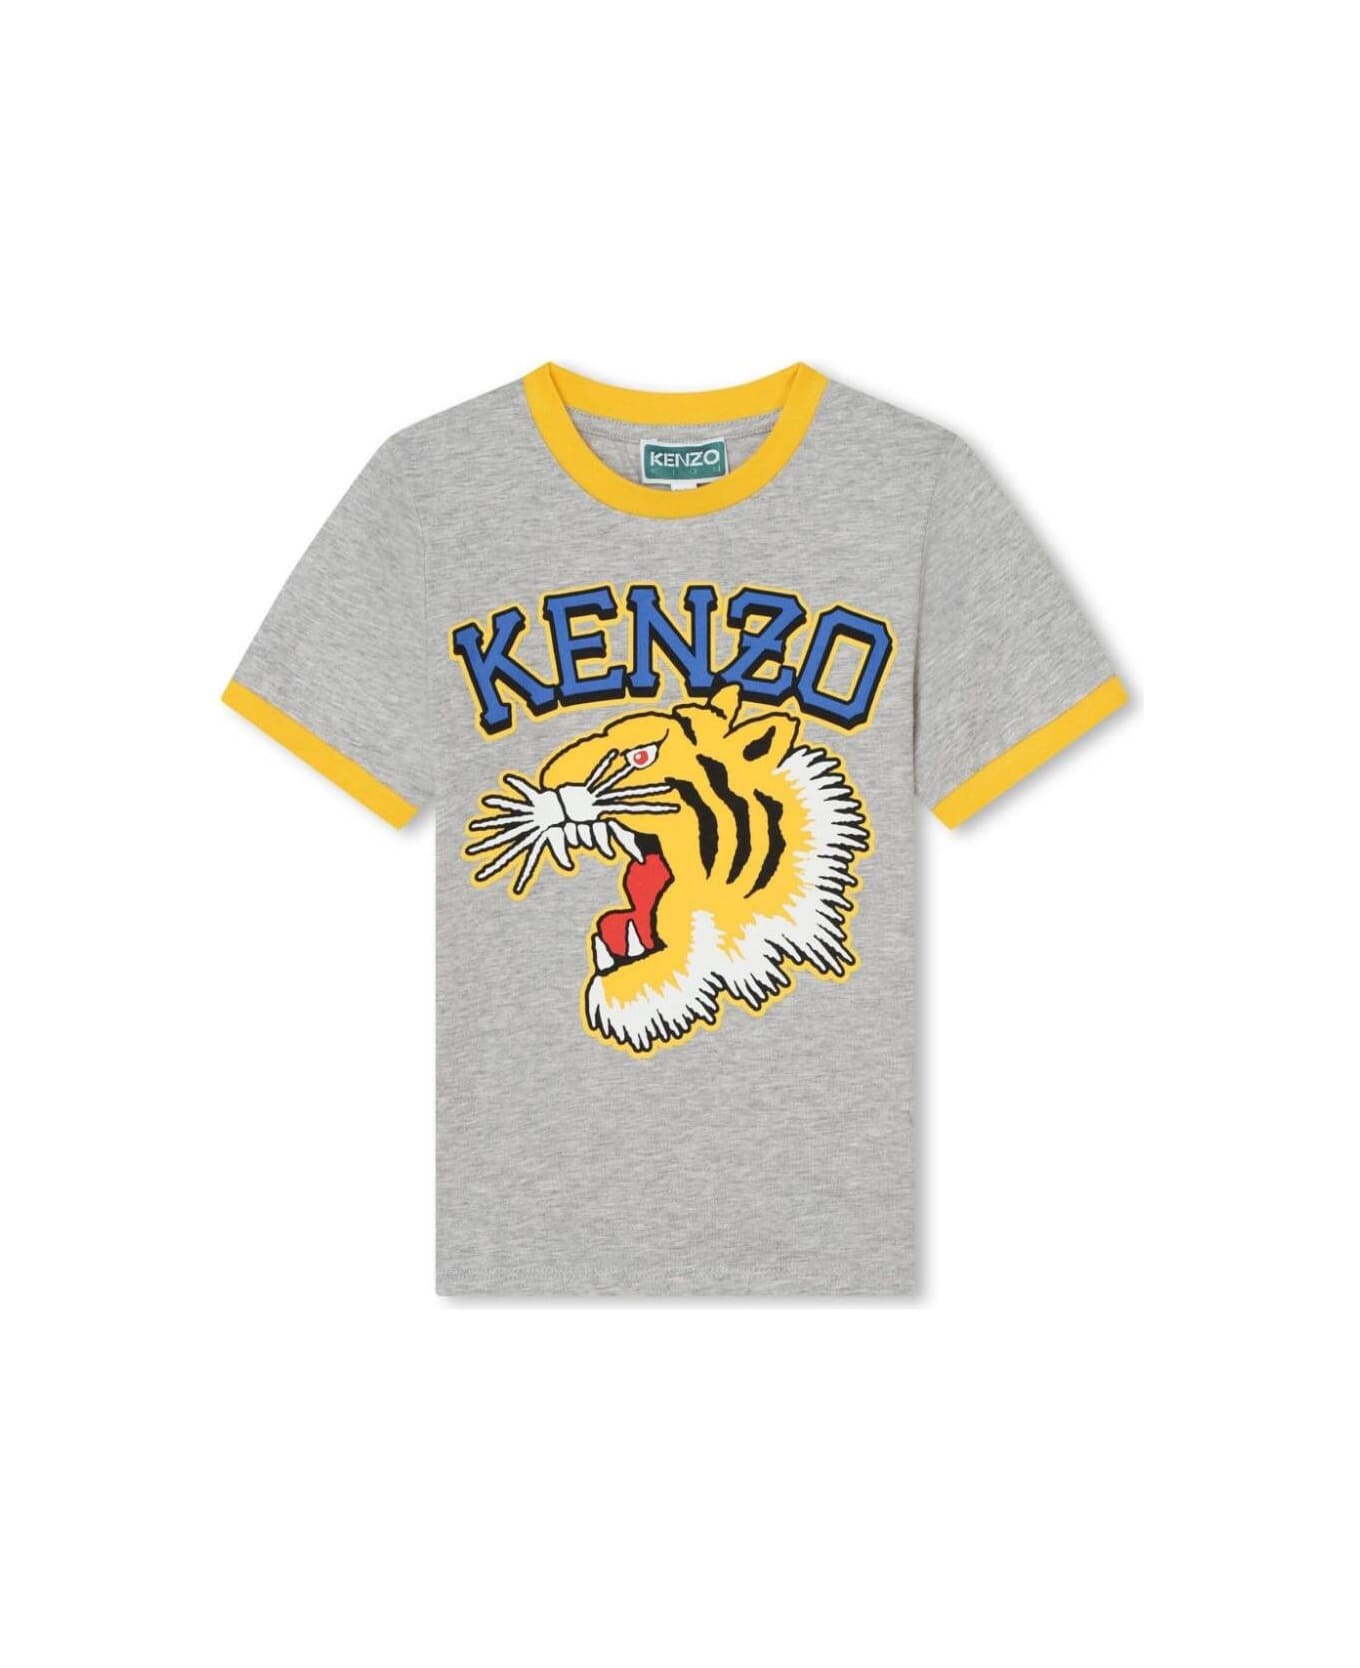 Kenzo Kids K60307a47 - Grey